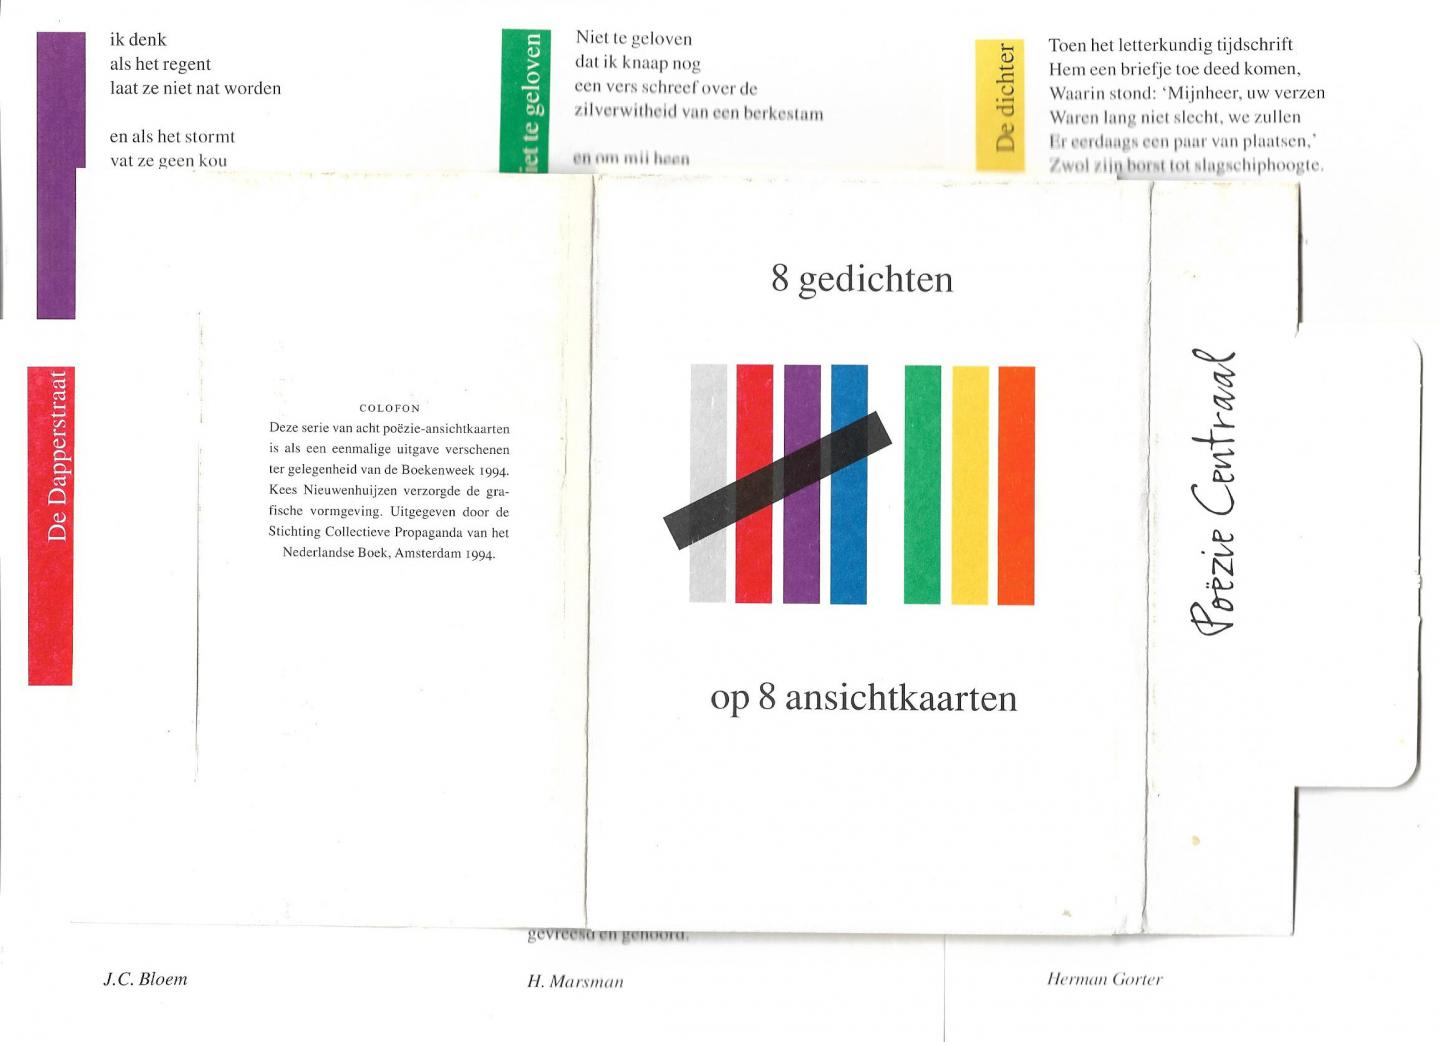 Bloem, Campert, Gorter, Herzberg, Komrij, Marja, Marsman en Schierbeek - Boekenweekgeschenk 1994. 8 gedichten op 8 ansichtkaarten, Poëzie Centraal